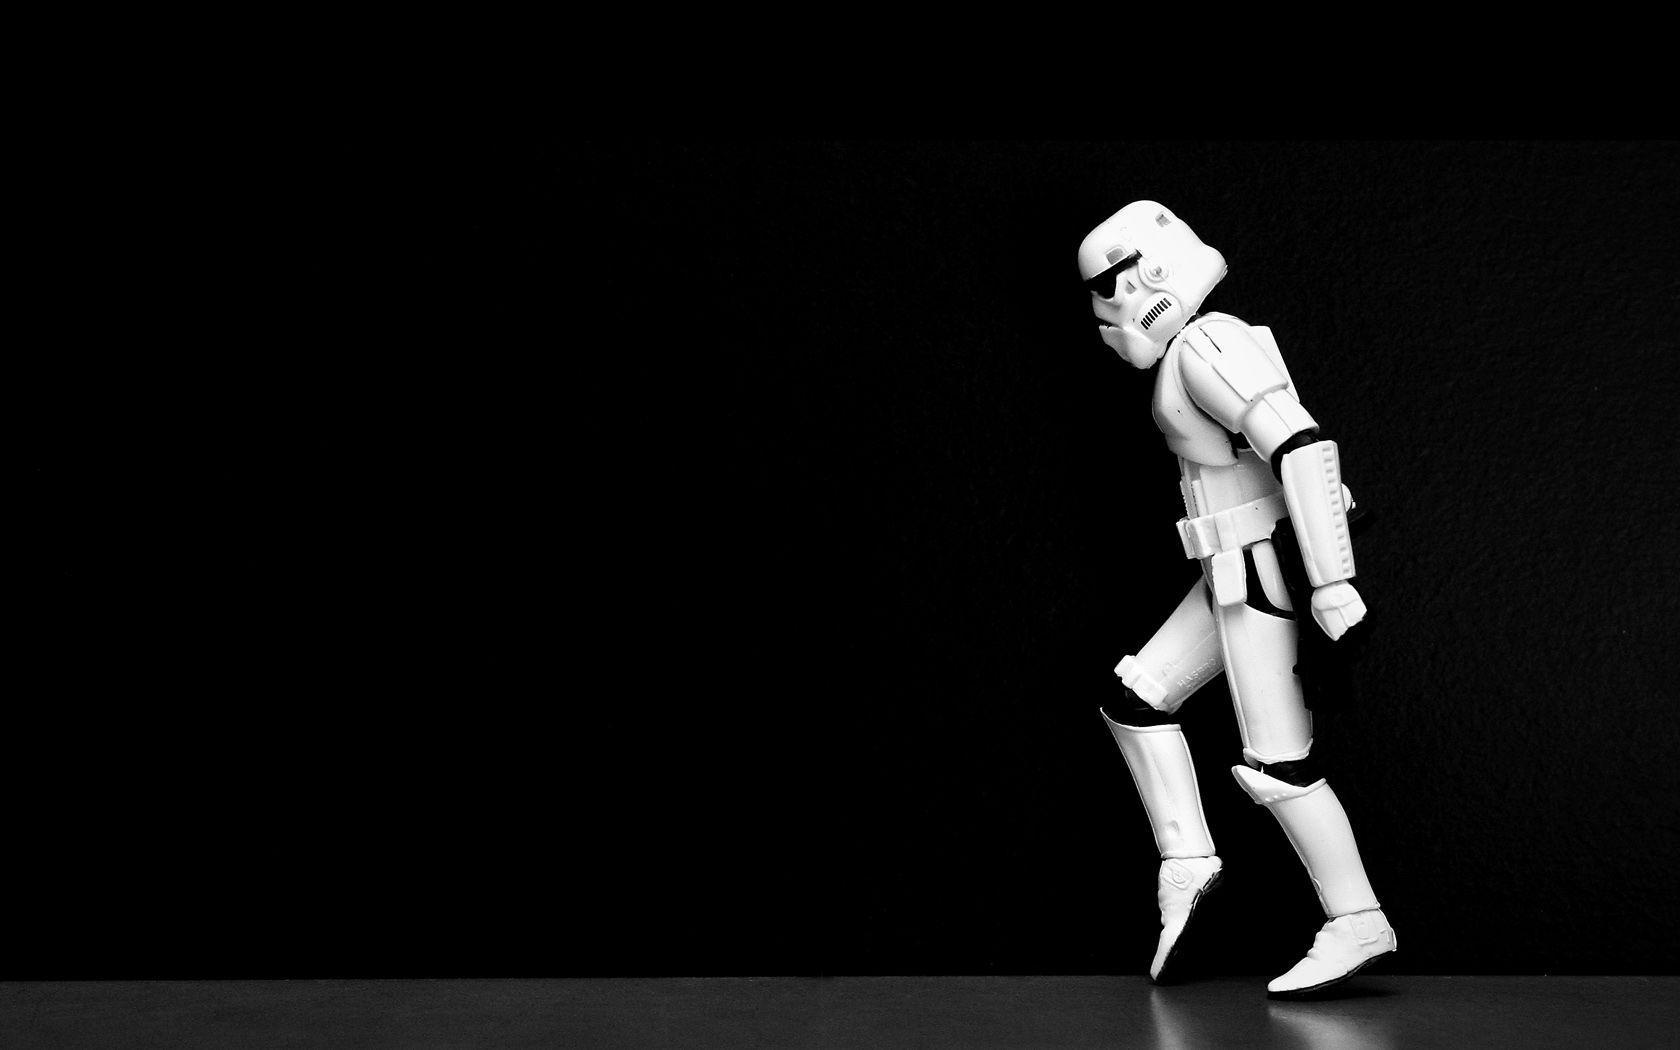 Stormtrooper Moonwalk Wallpaper. Stormtroopers